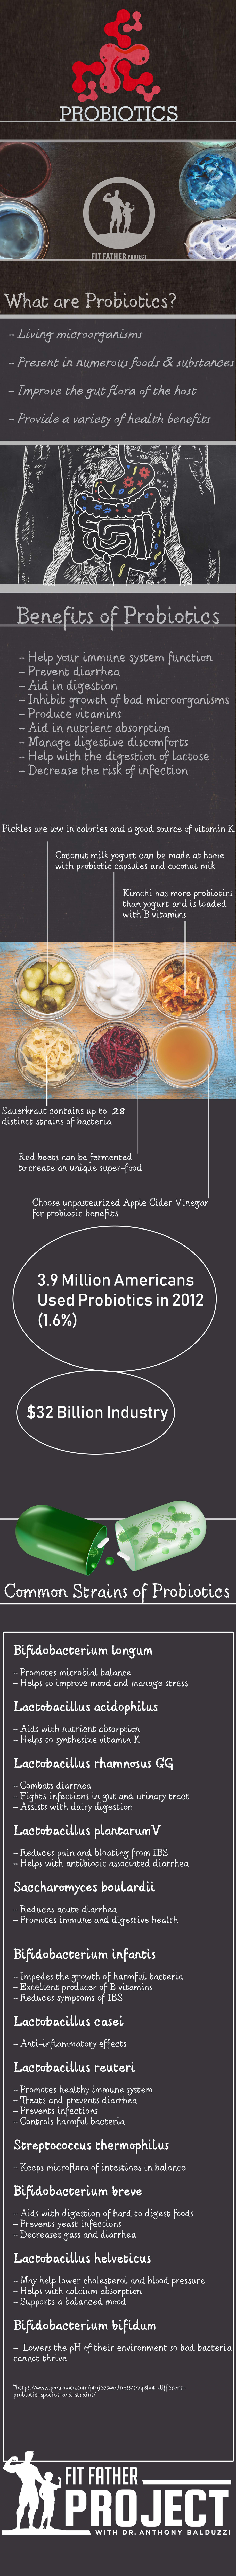 probiotics infographic